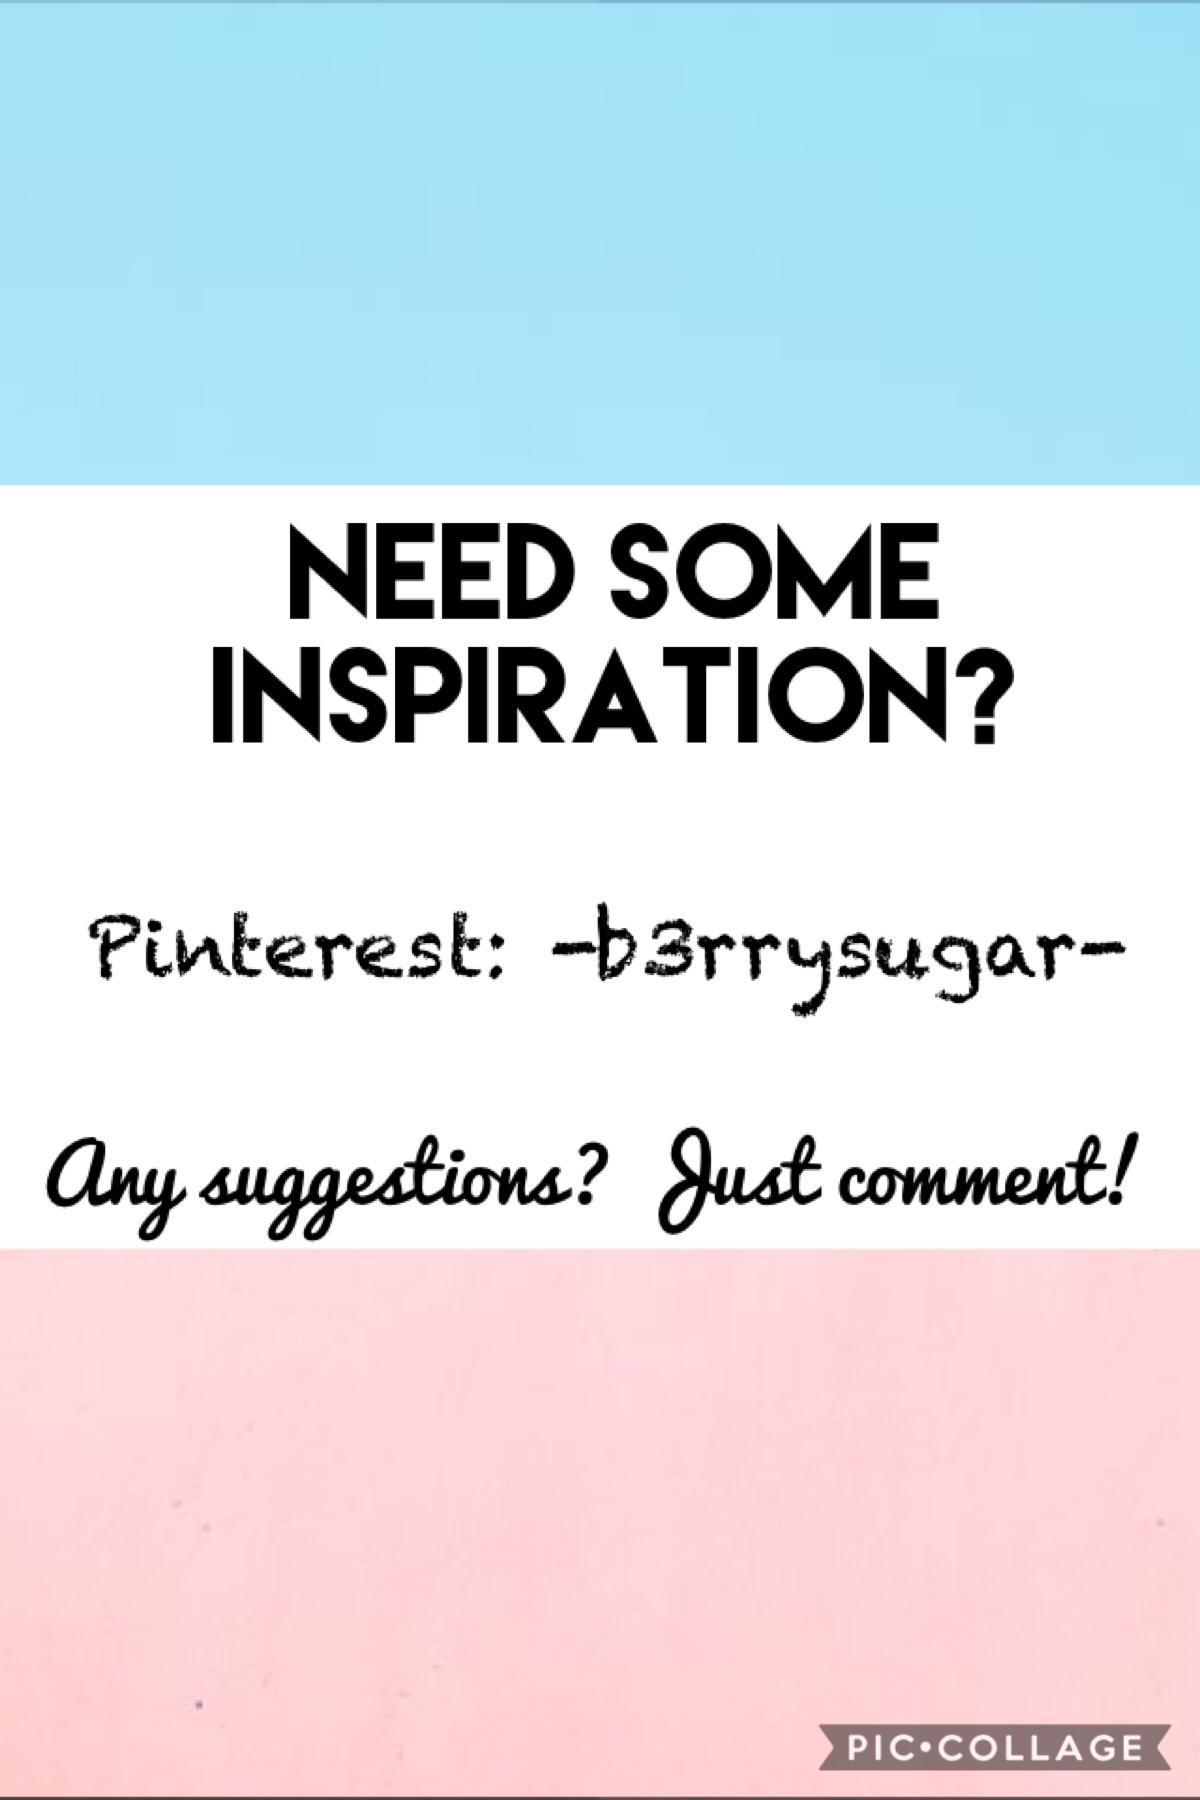 Comment your Pinterest 😝